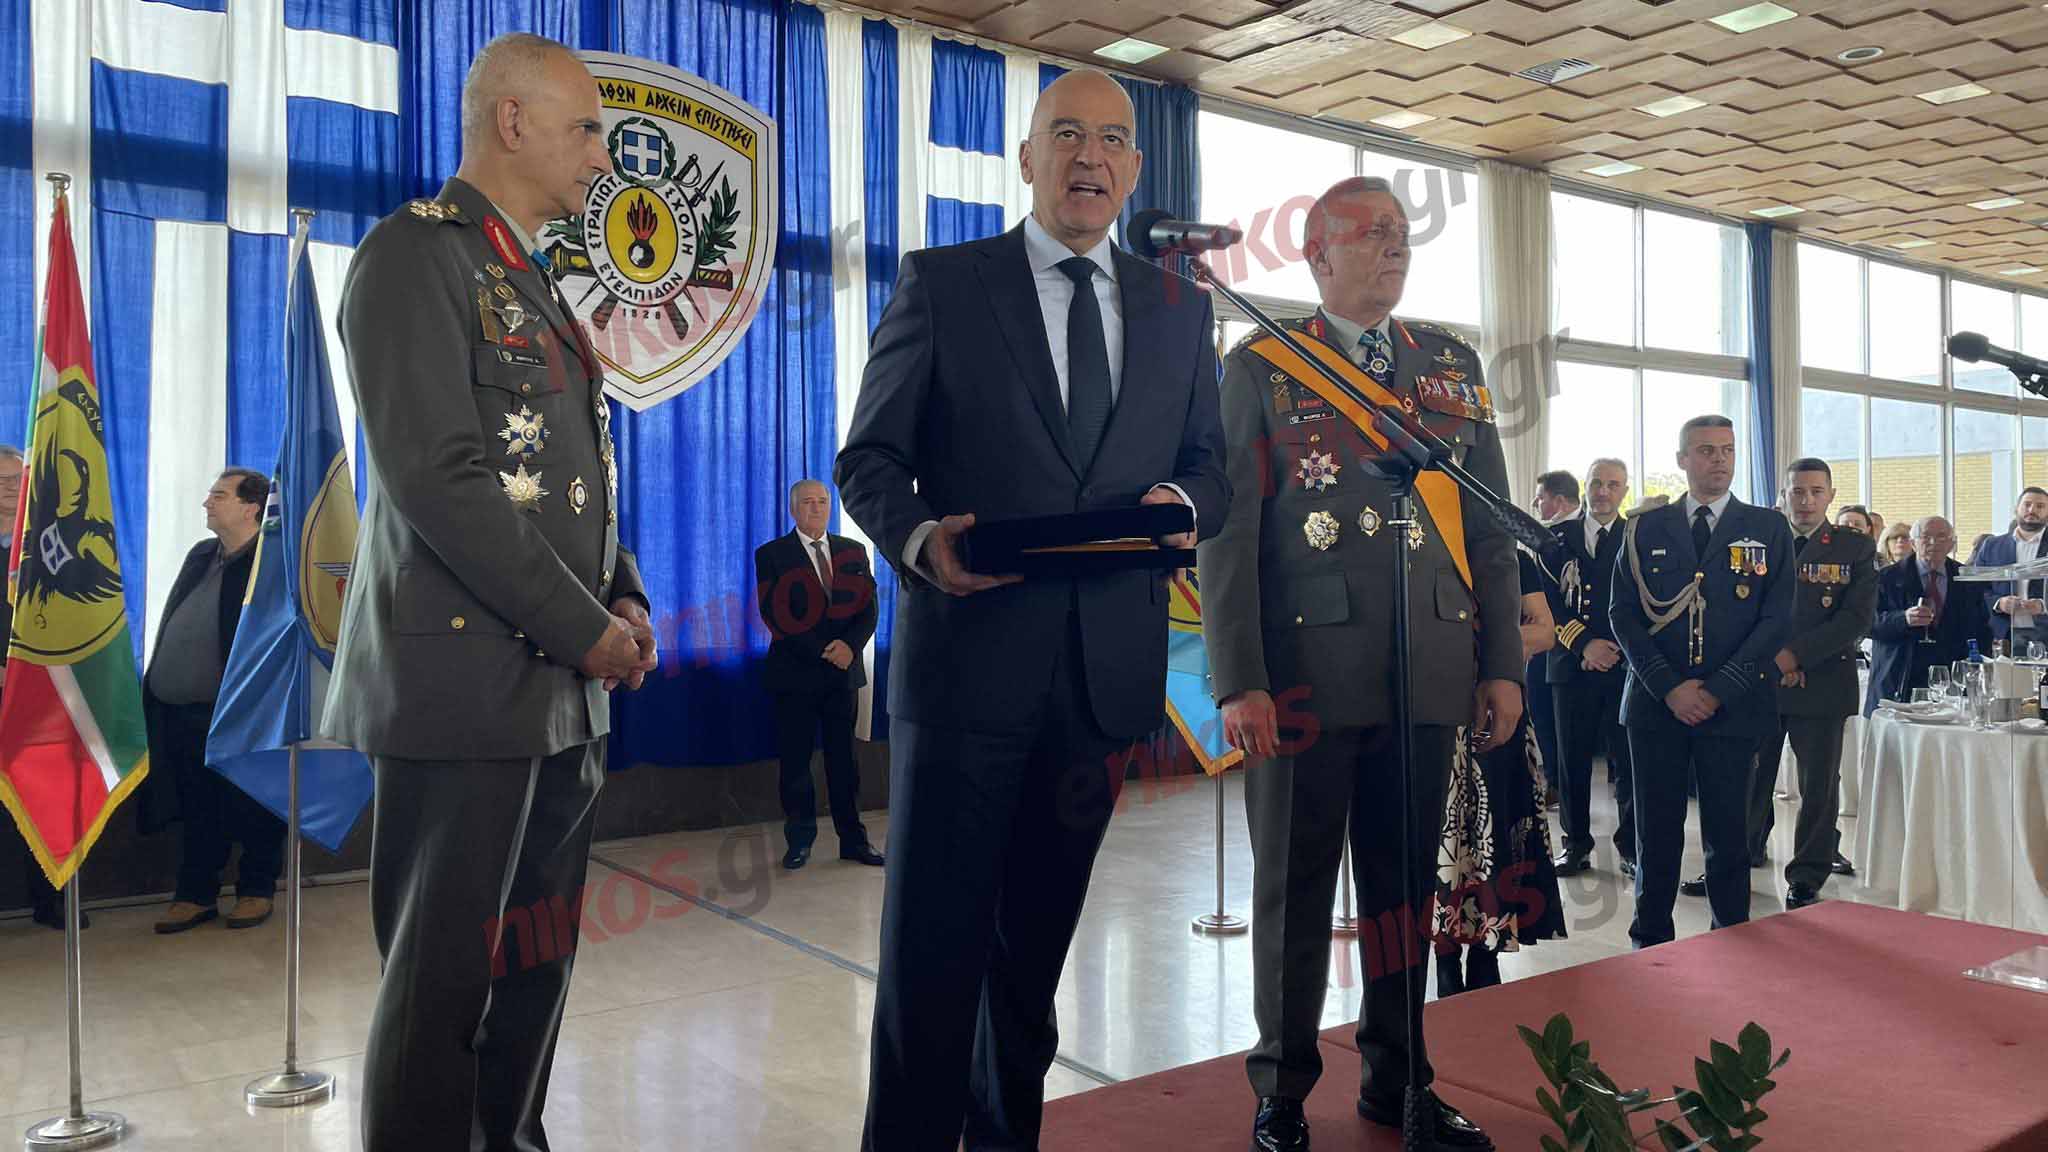 Στρατηγός Κωνσταντίνος Φλώρος: Πολλά συνέβησαν αυτά τα 4 χρόνια, όμως αντέξαμε – Τα όπλα ήταν πάντα σε ετοιμότητα 